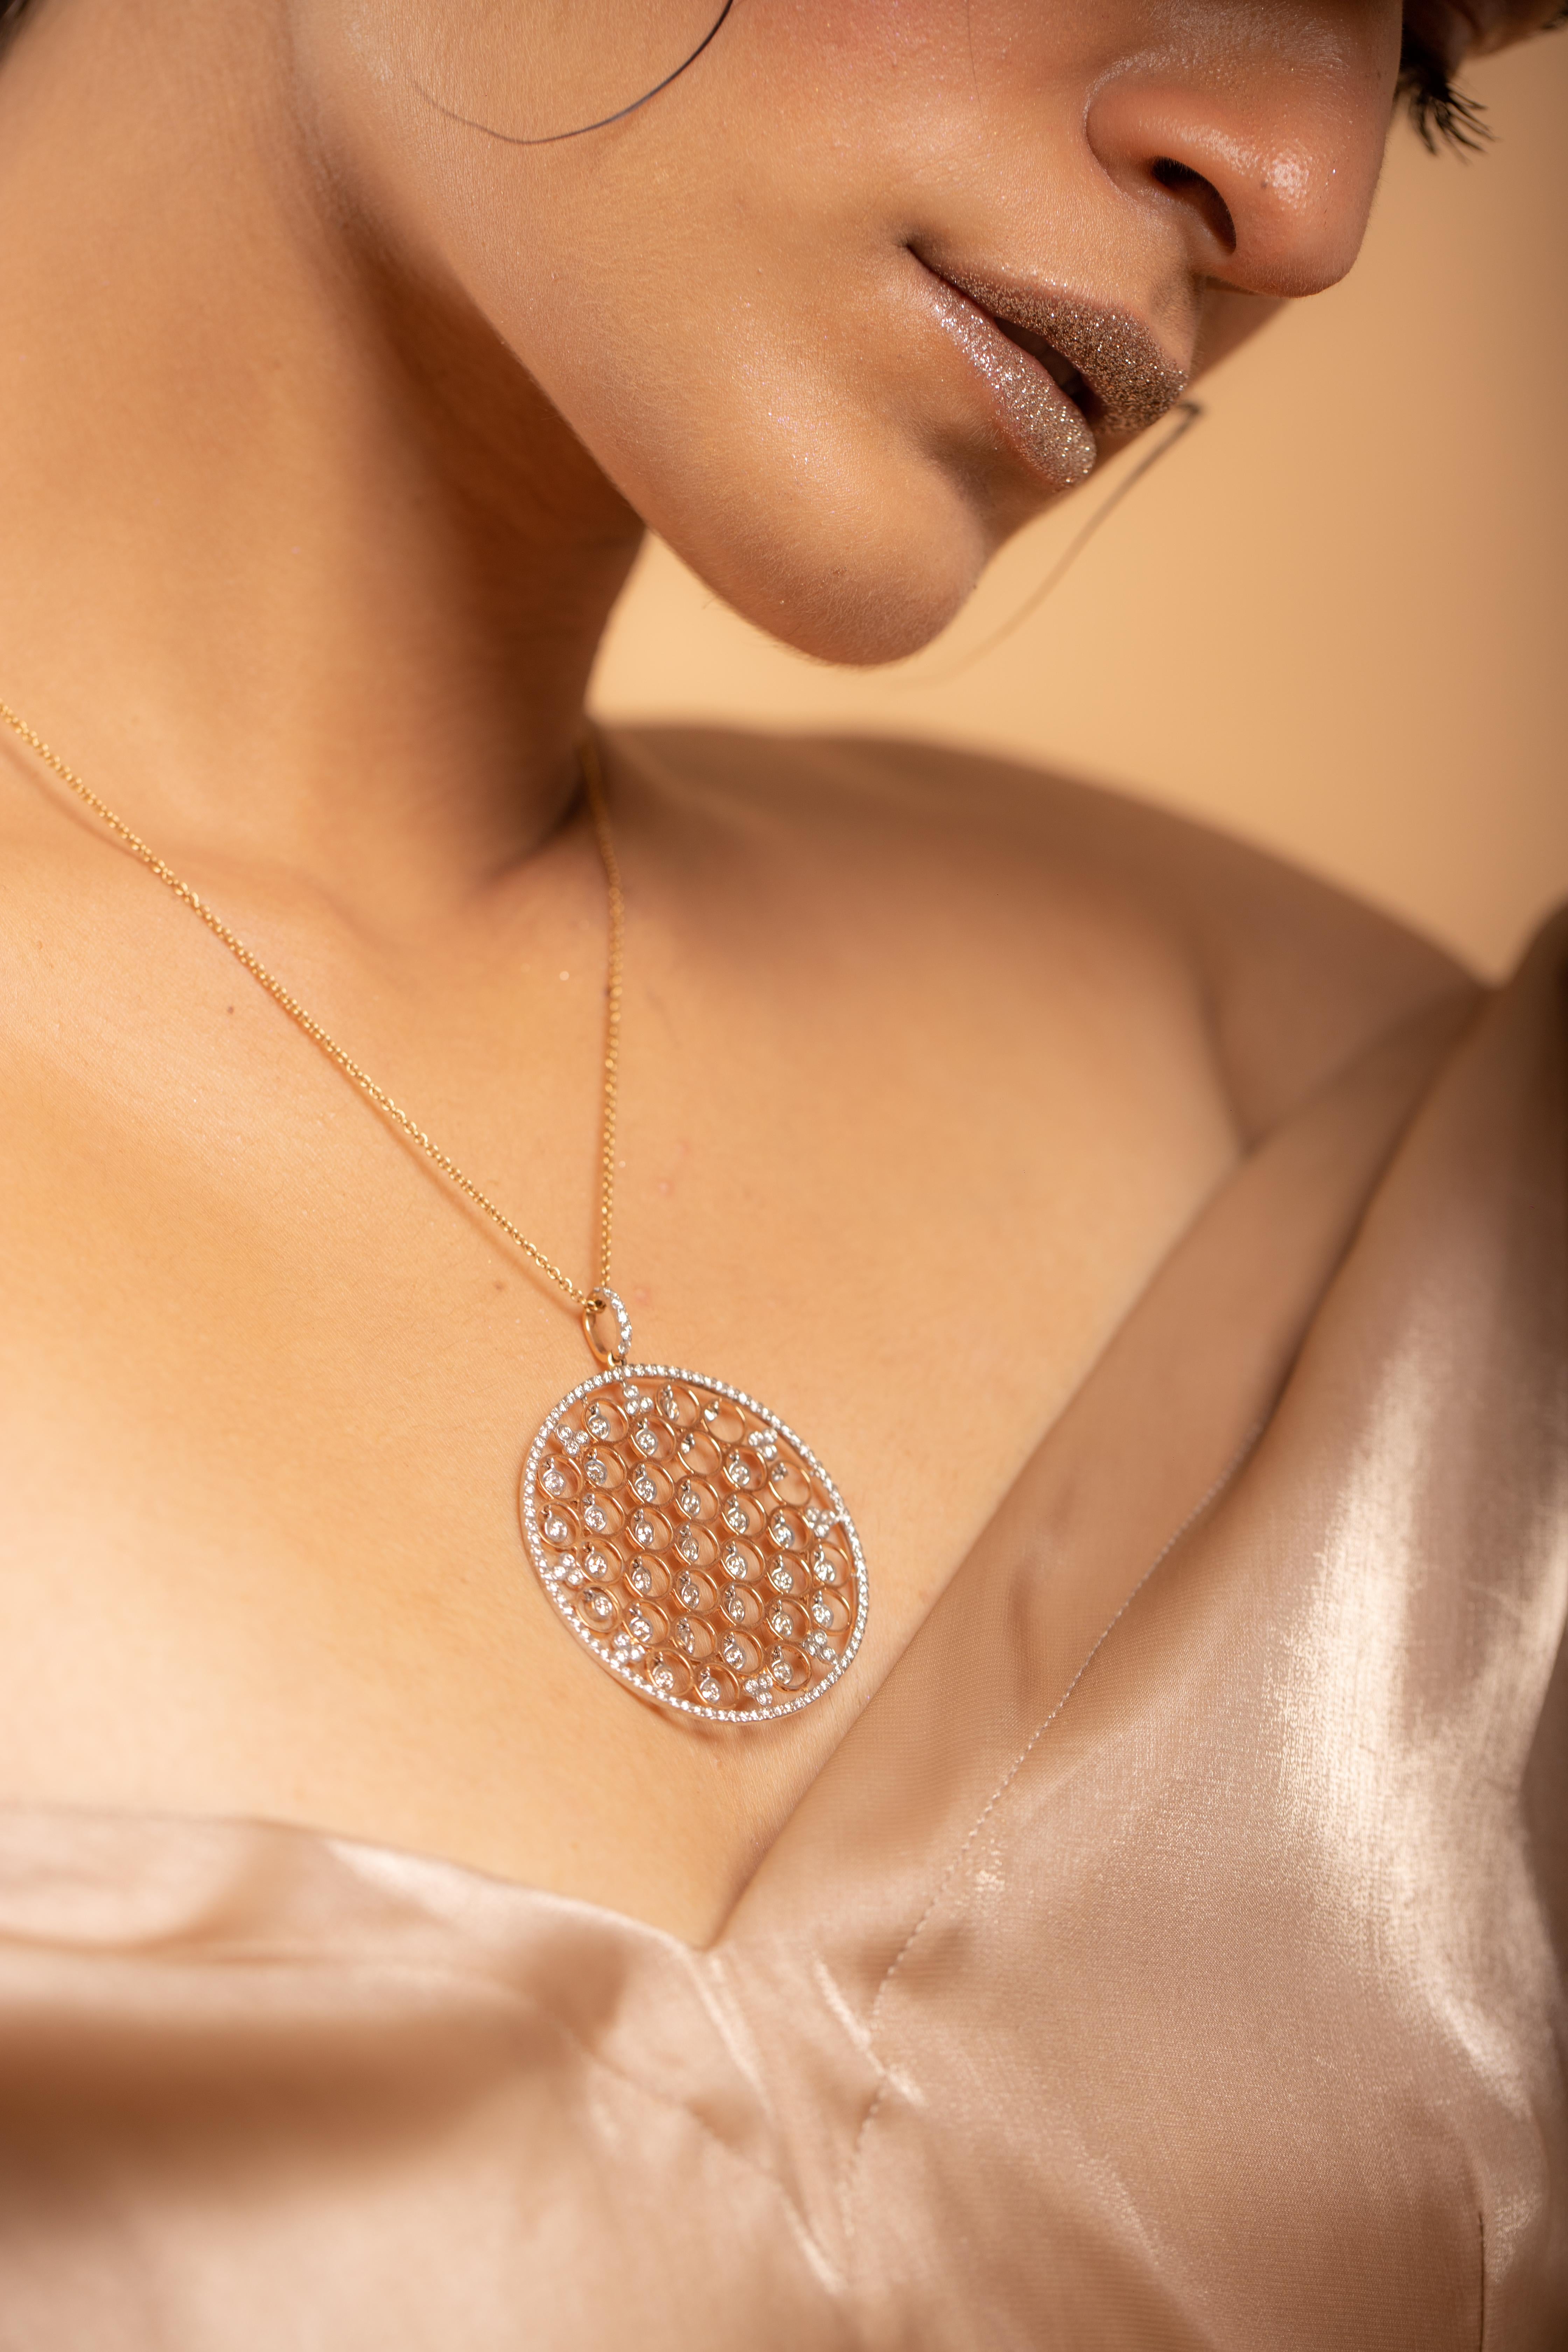 Diamant-Halskette aus 18 Karat Gold, besetzt mit Diamanten mit rundem Schliff.
Ergänzen Sie Ihren Look mit dieser eleganten Diamantketten-Halskette. Dieses atemberaubende Schmuckstück wertet einen Freizeitlook oder ein elegantes Outfit sofort auf.